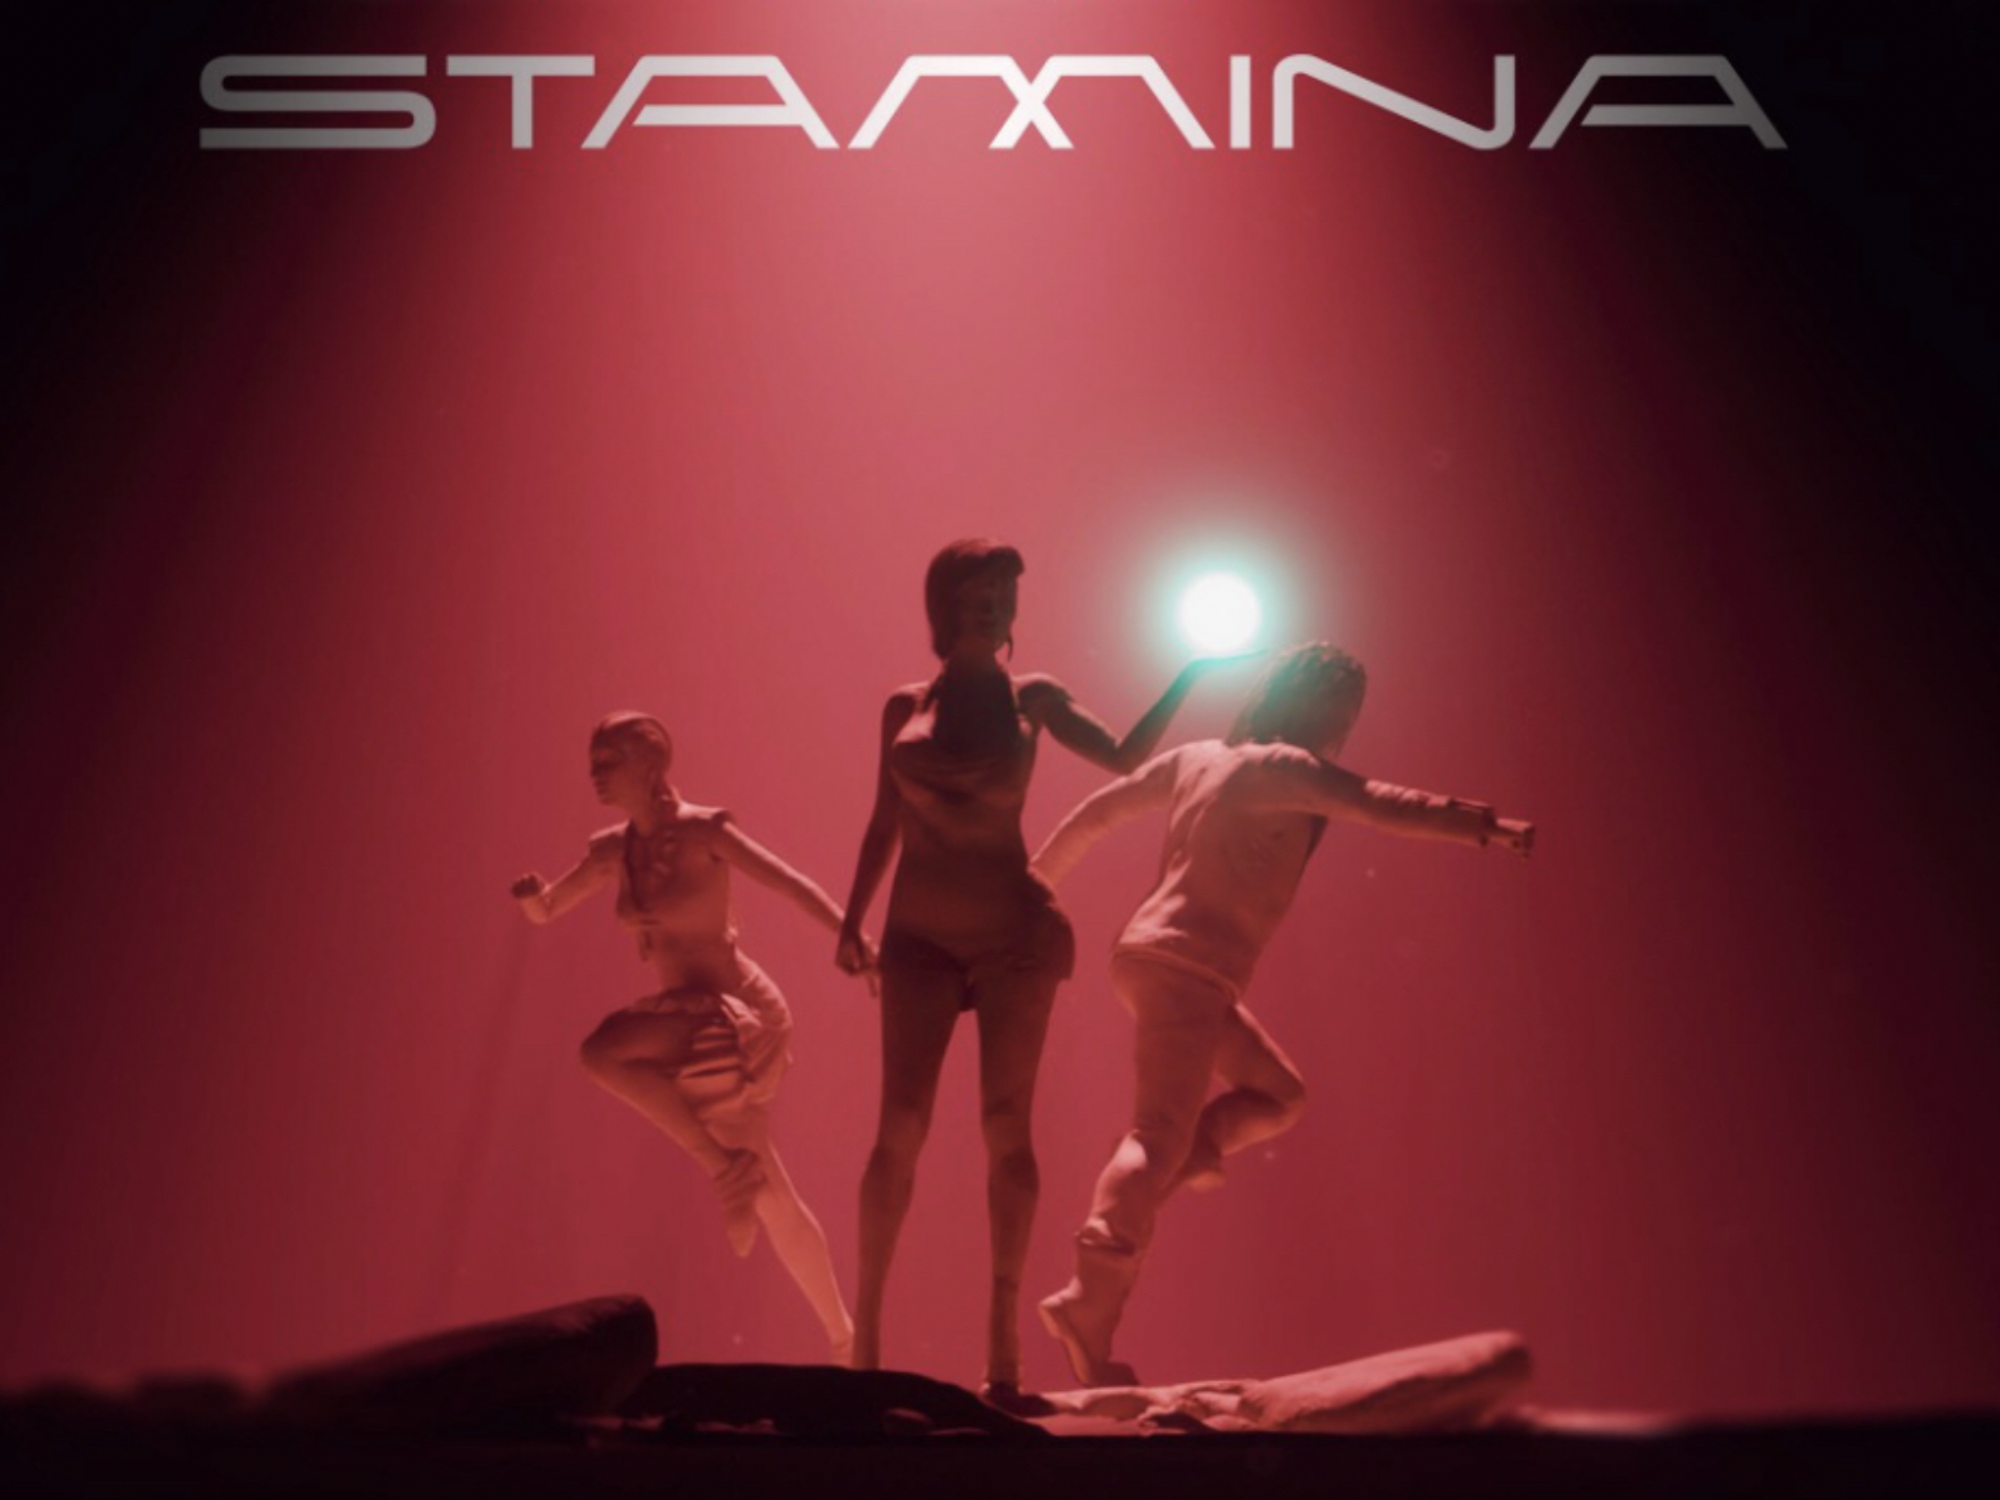 Tiwa Savage Teams Up With Ayra Starr & Young Jonn For New Single 'Stamina'